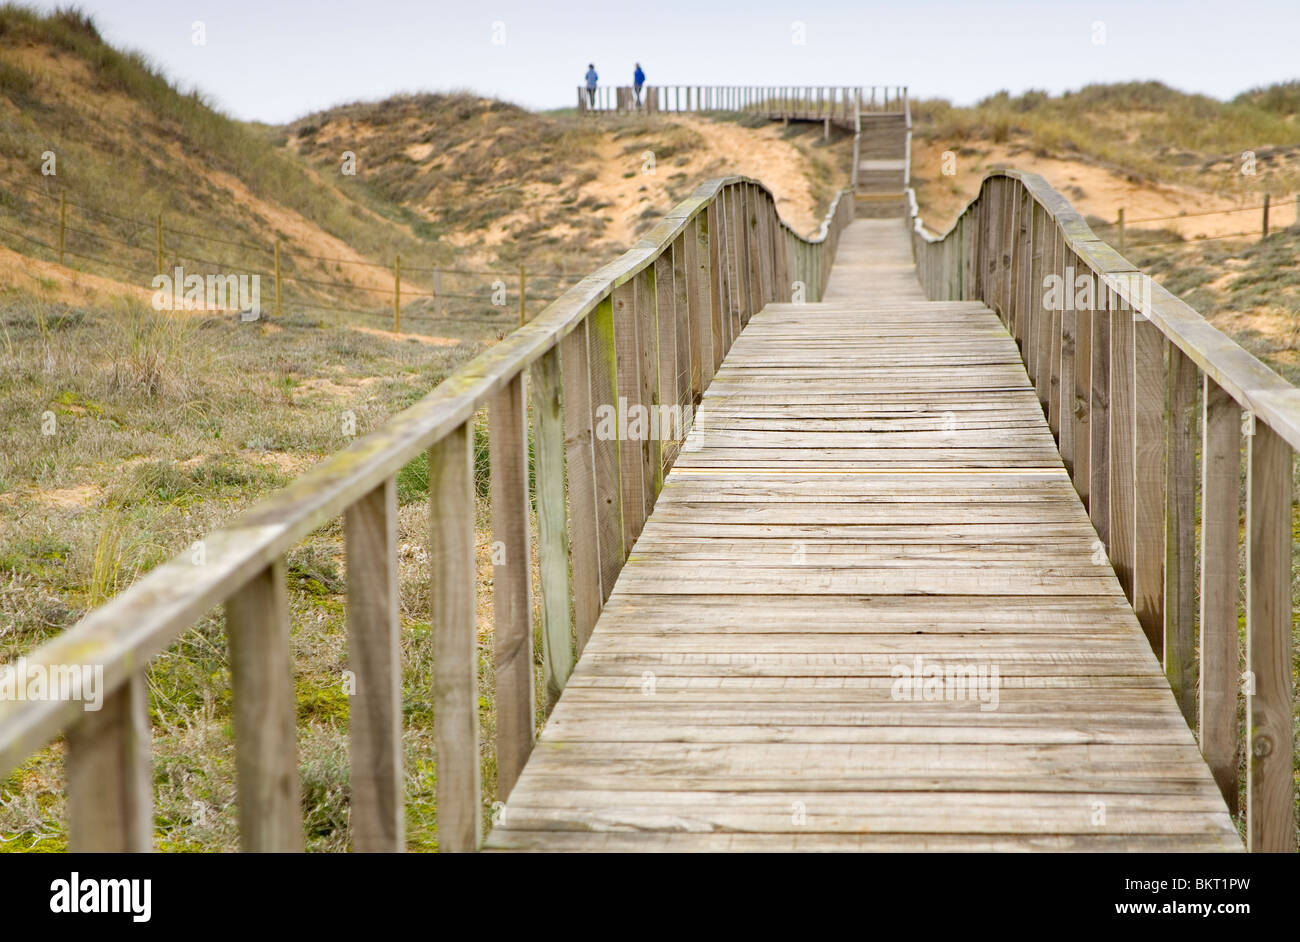 Wooden footbridge in sand dunes. Stock Photo